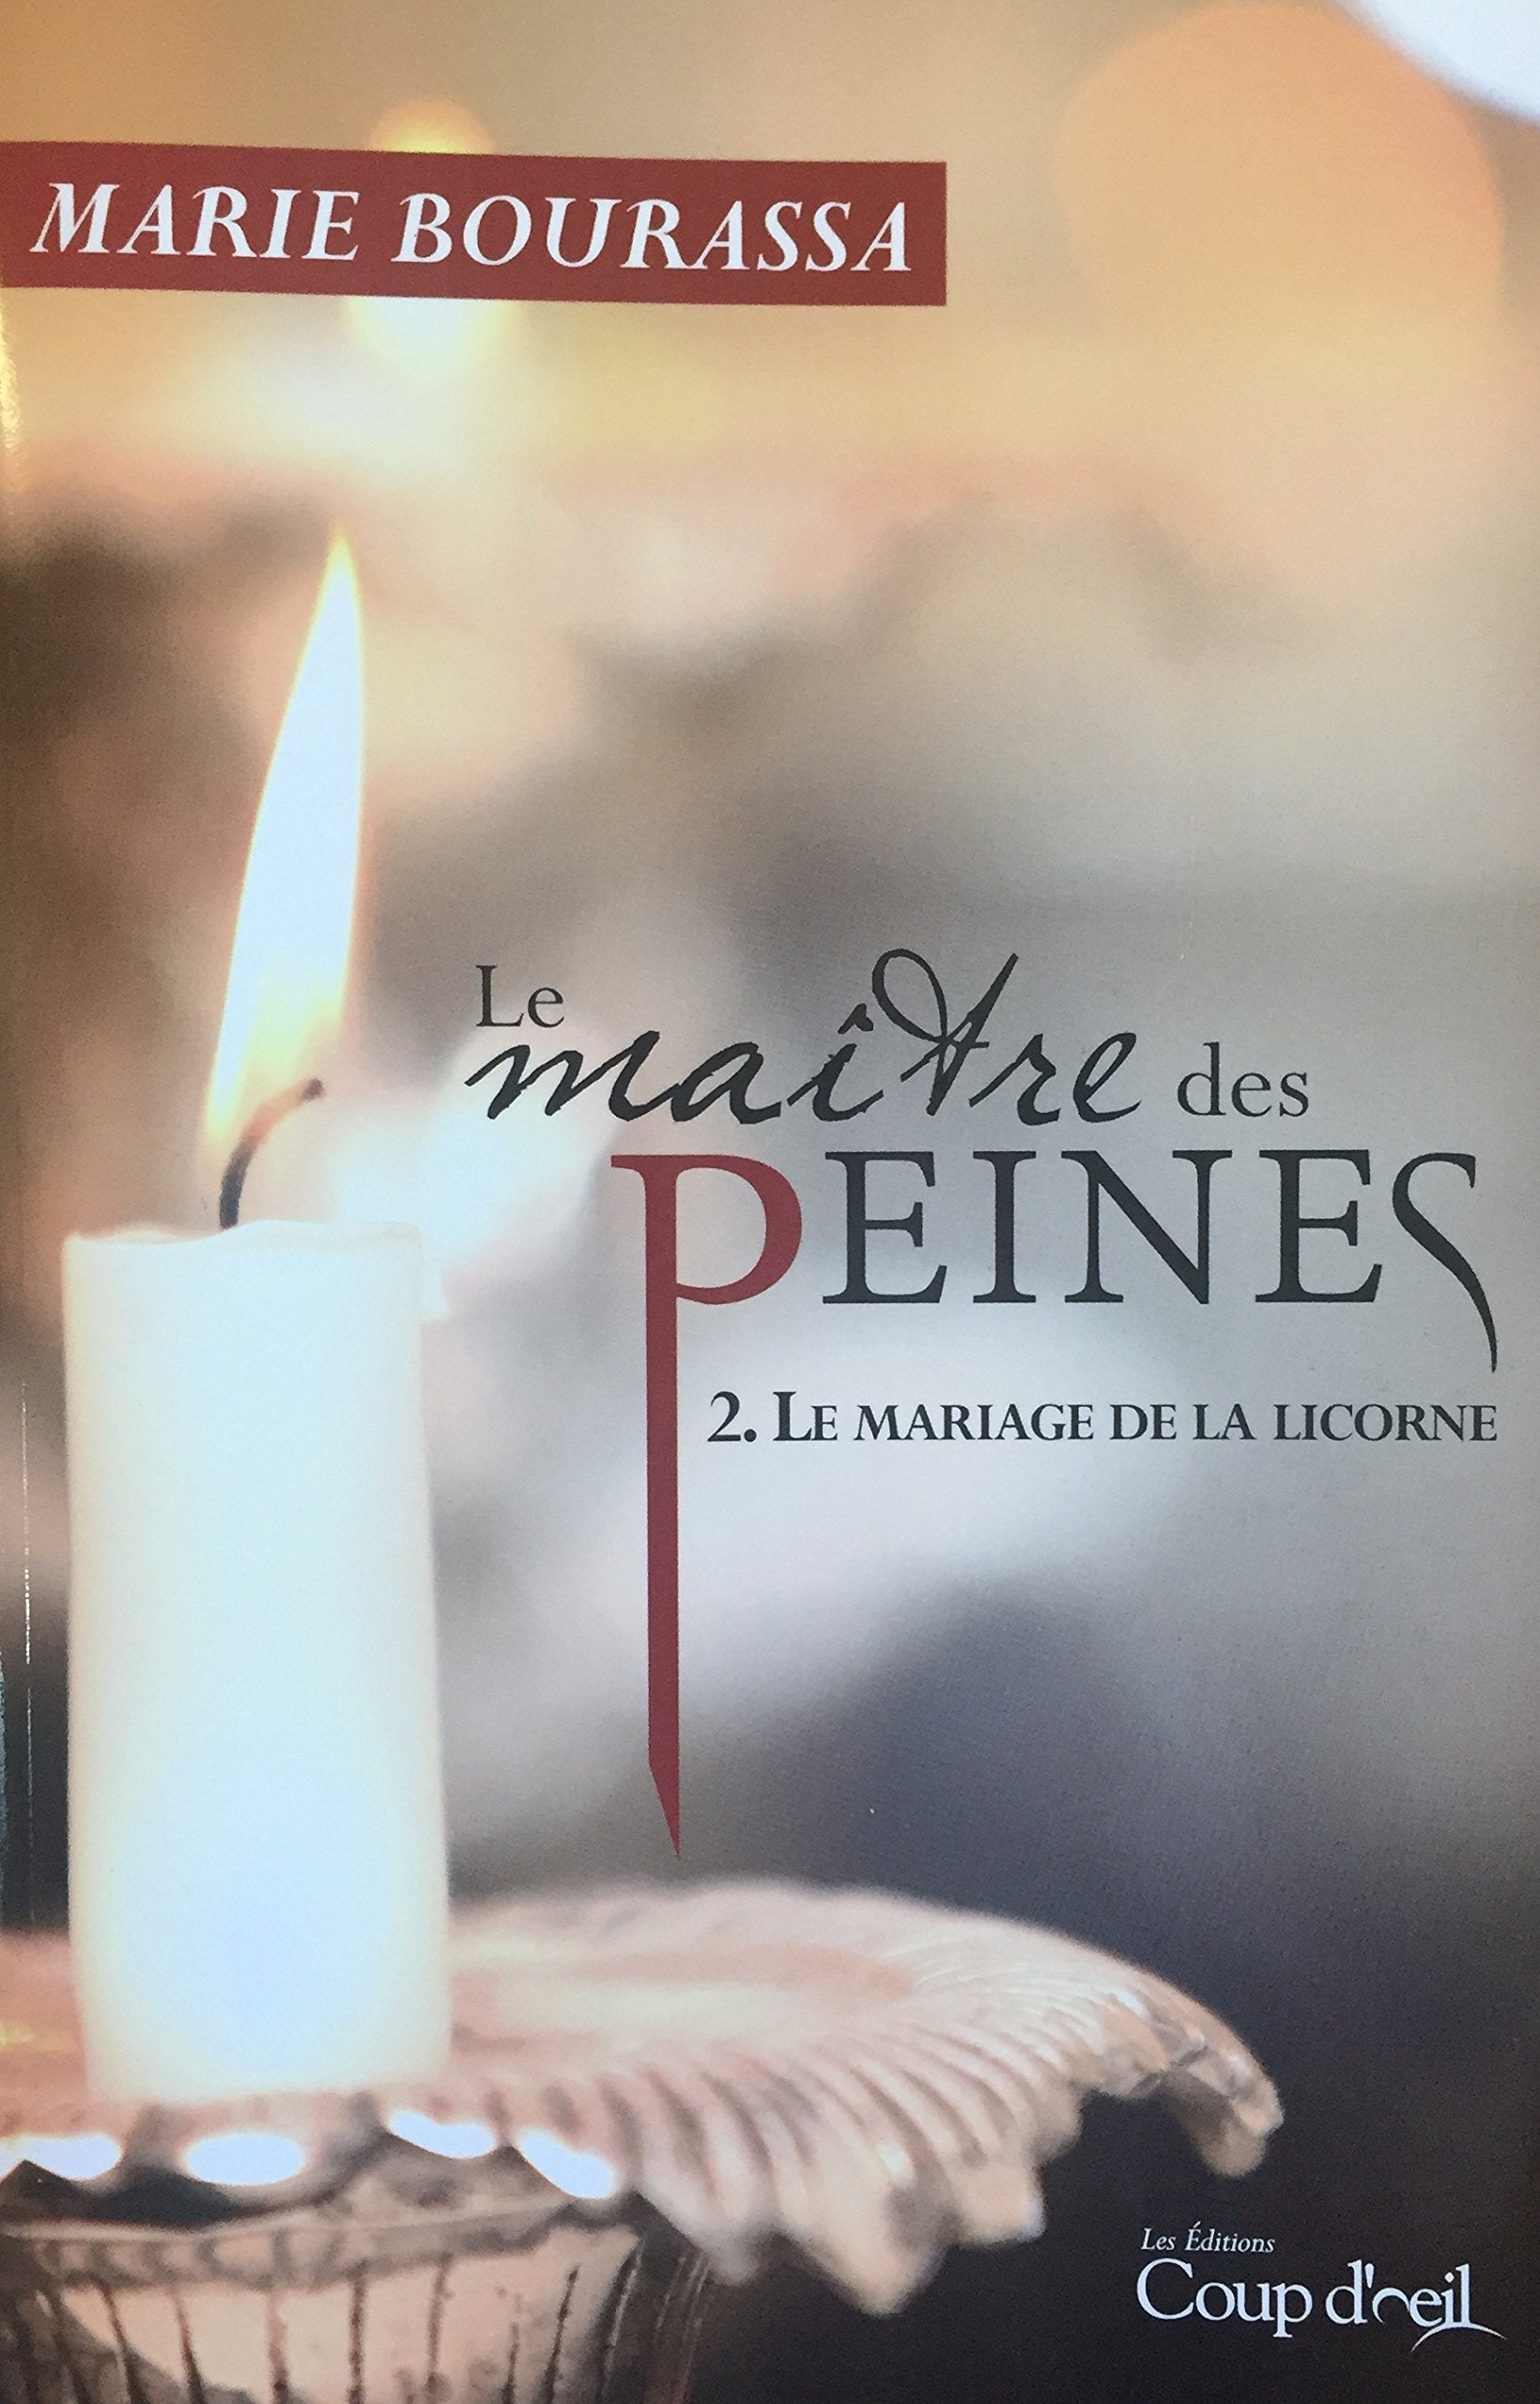 Livre ISBN 2897317329 Le maître des peines # 2 : Le mariage de la licorne (Marie Bourassa)